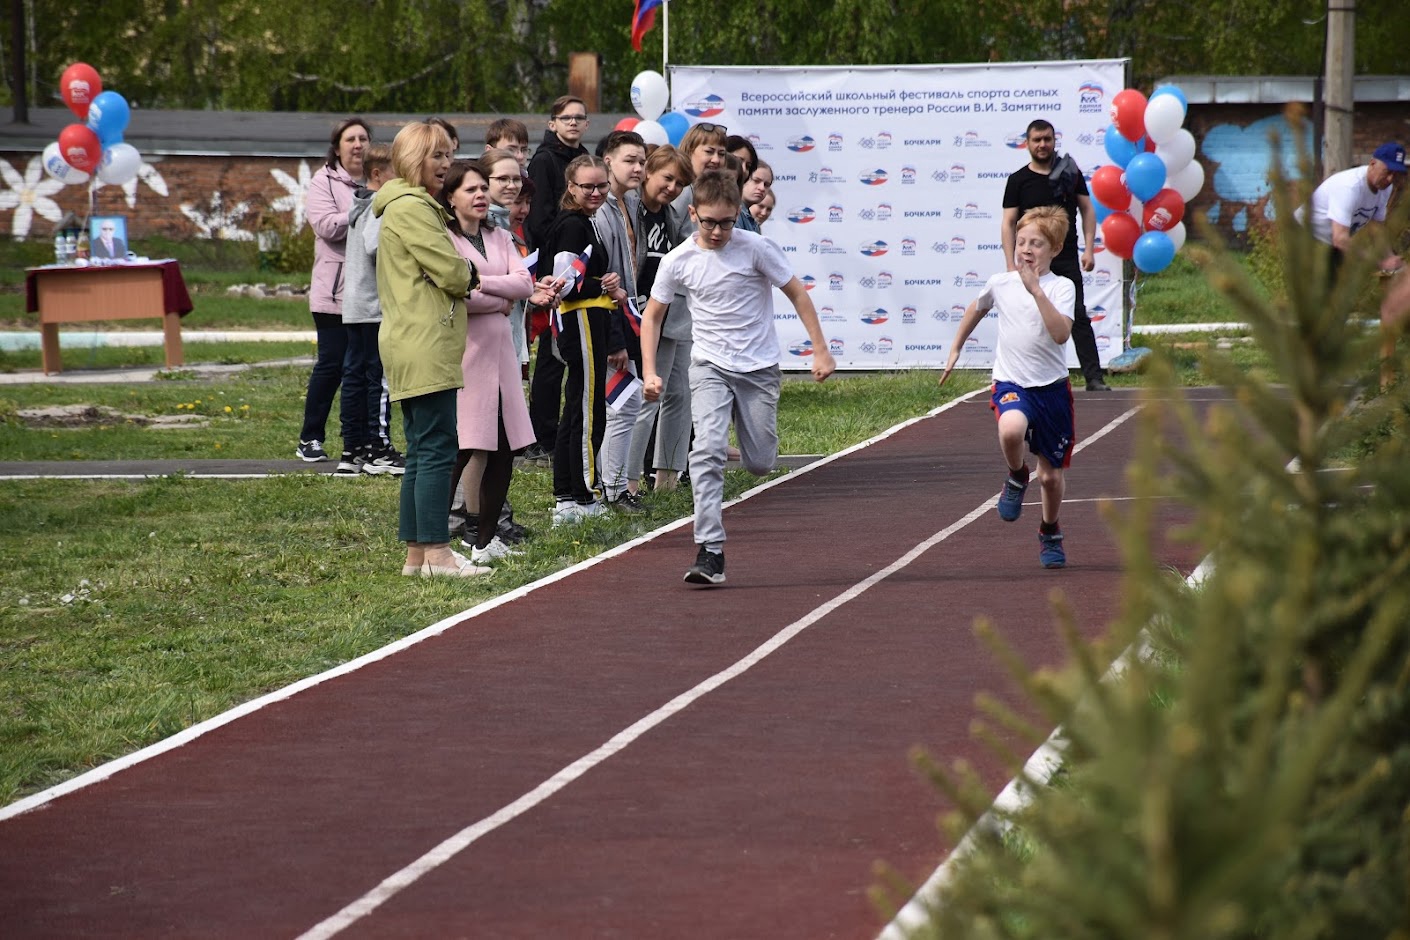 Всероссийский школьный фестиваль спорта слепых.